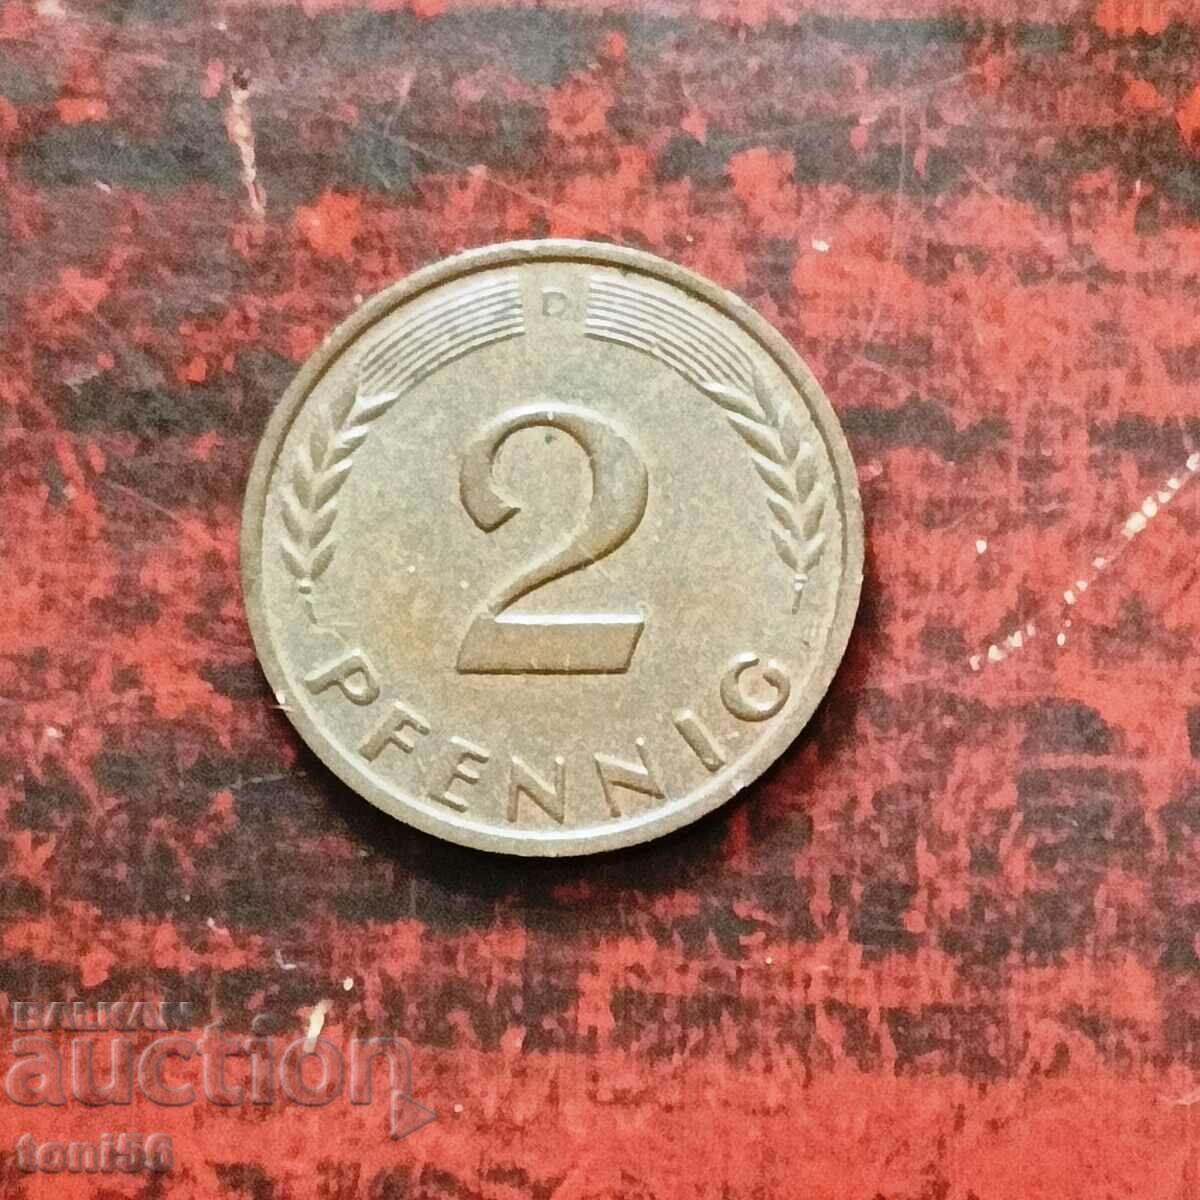 Germany - FRG, 2 Pfennig 1958 D, aUNC